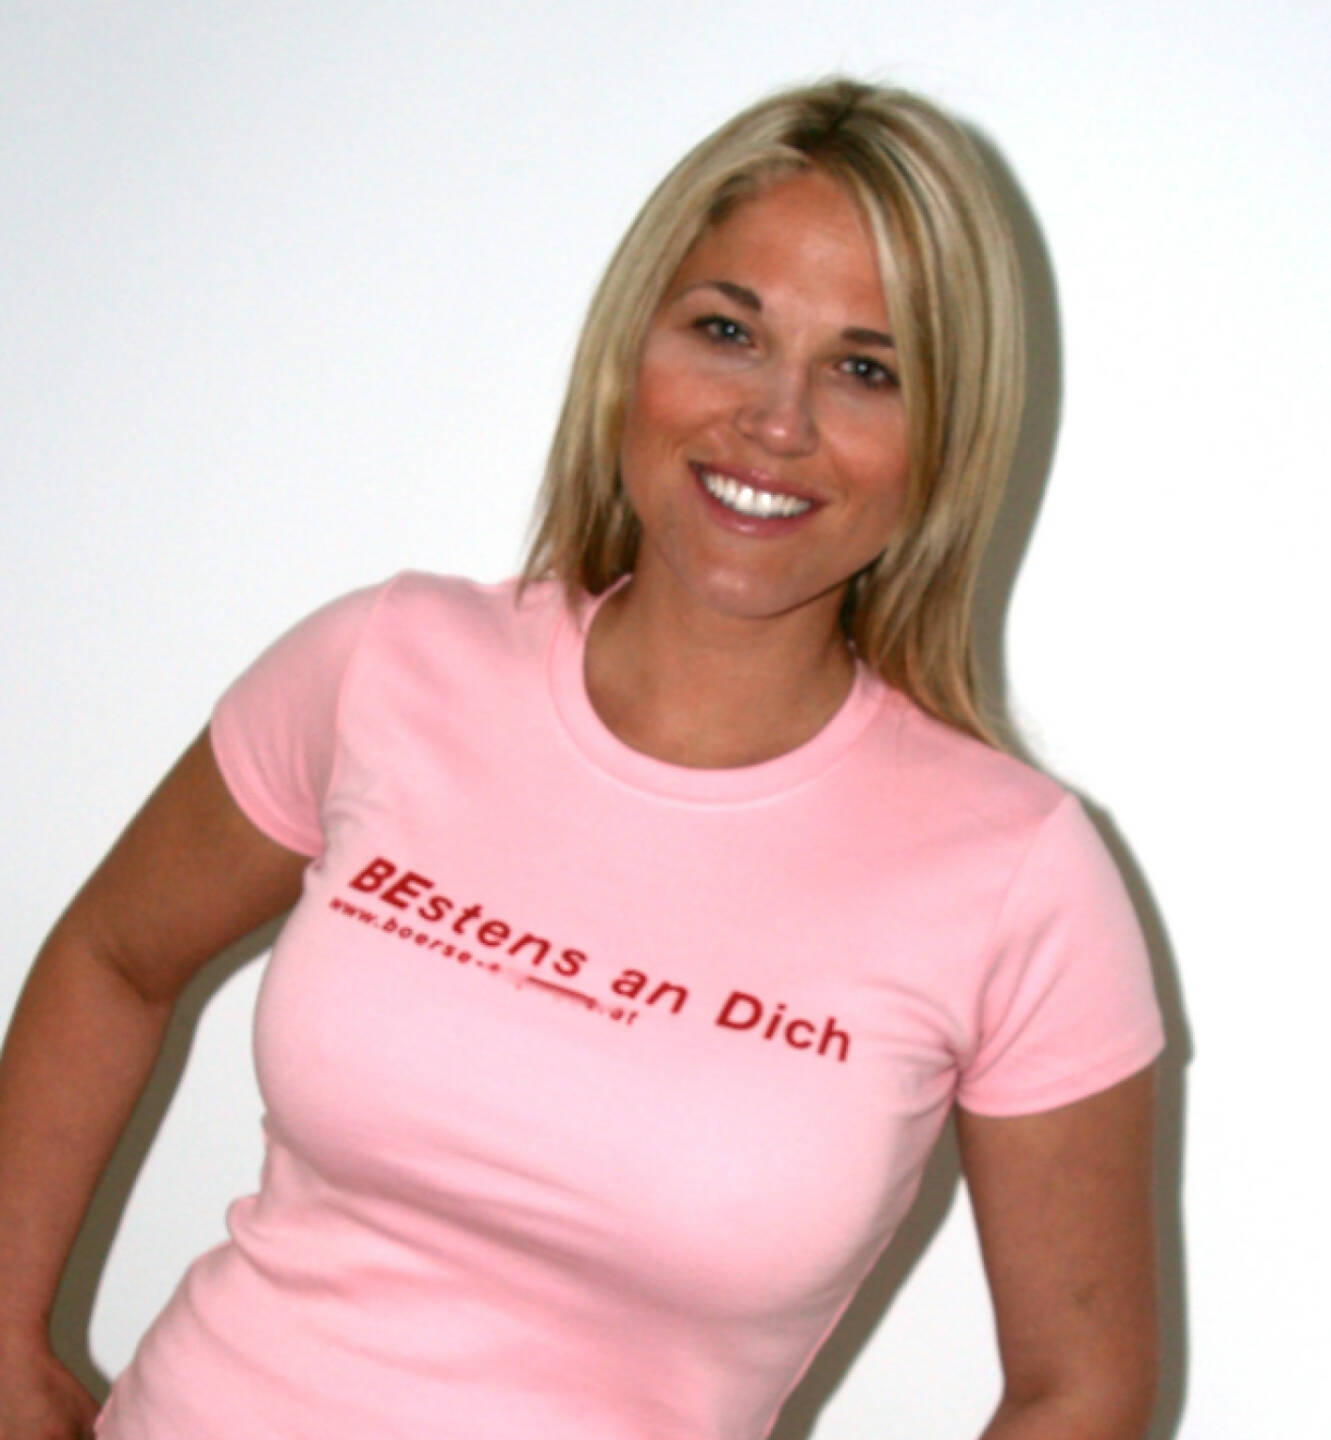 Bestens an Dich - Christina Weidinger im Shirt